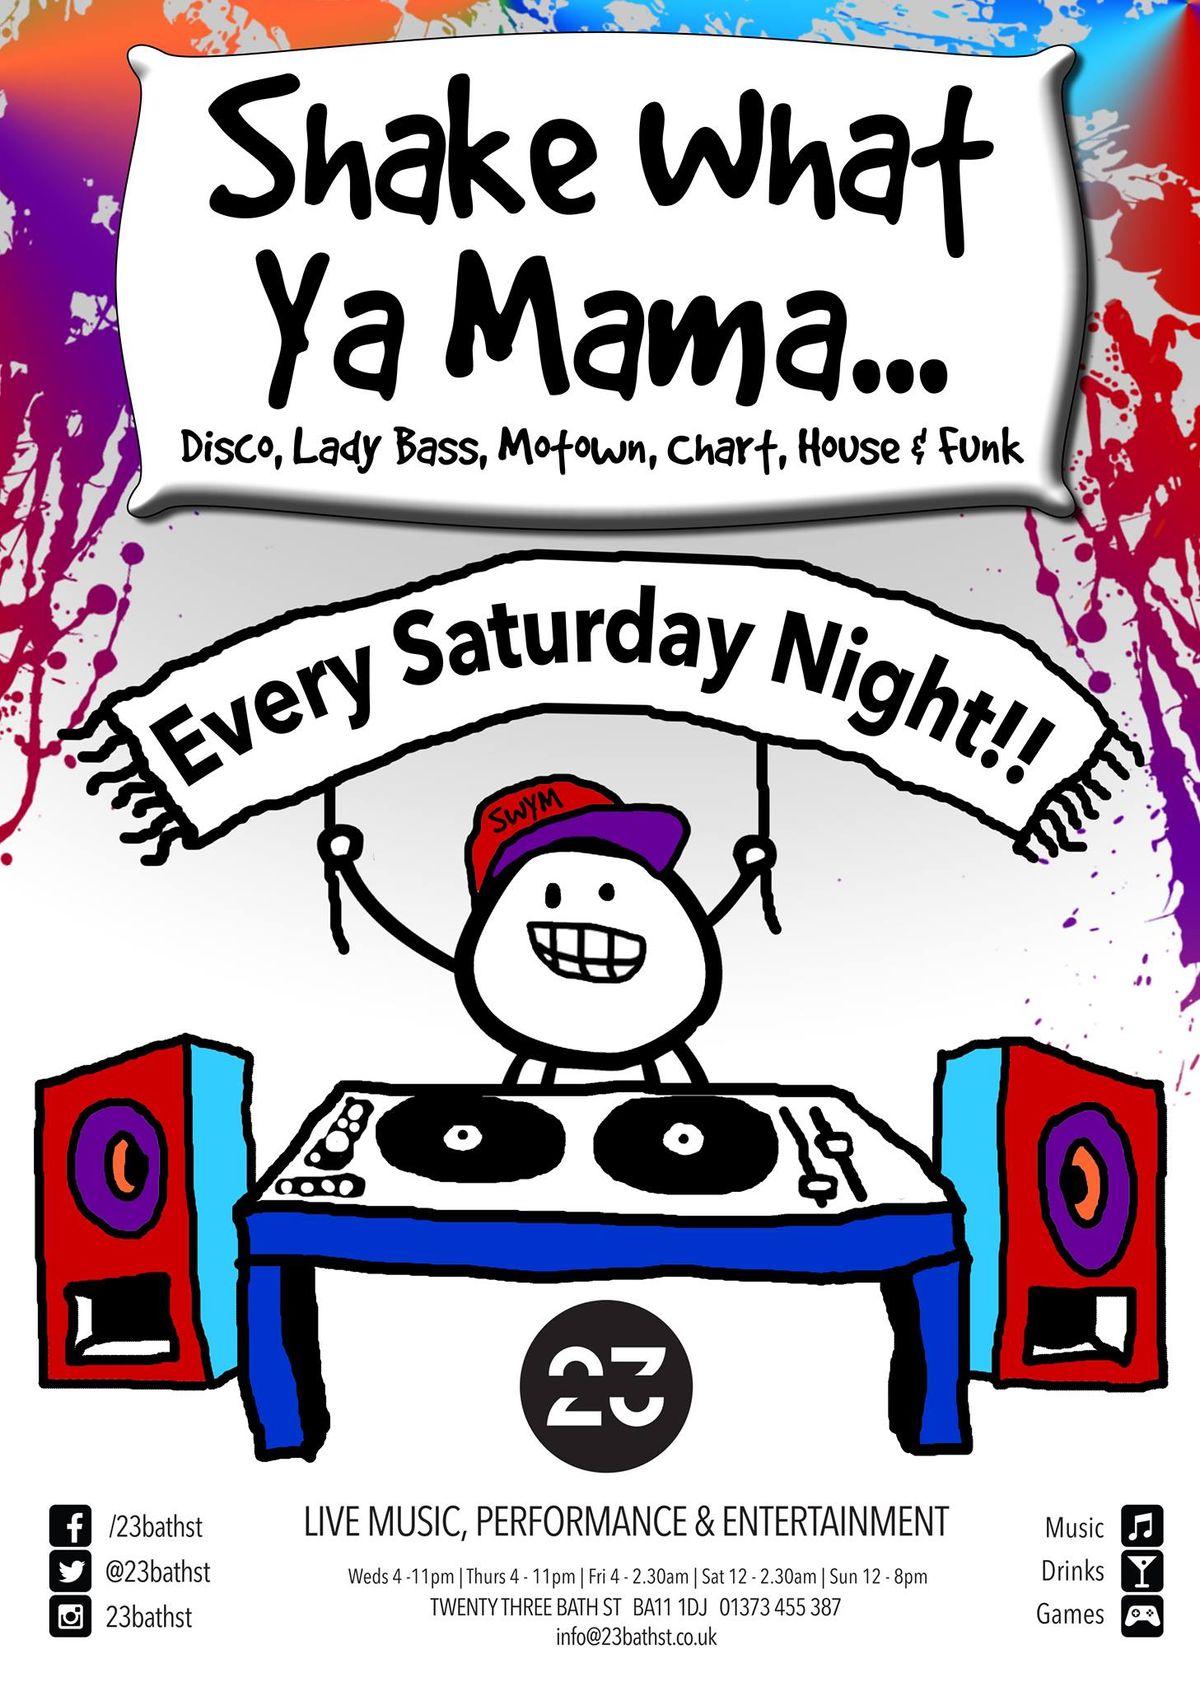 Shake What Ya Mama - Every Saturday Night 